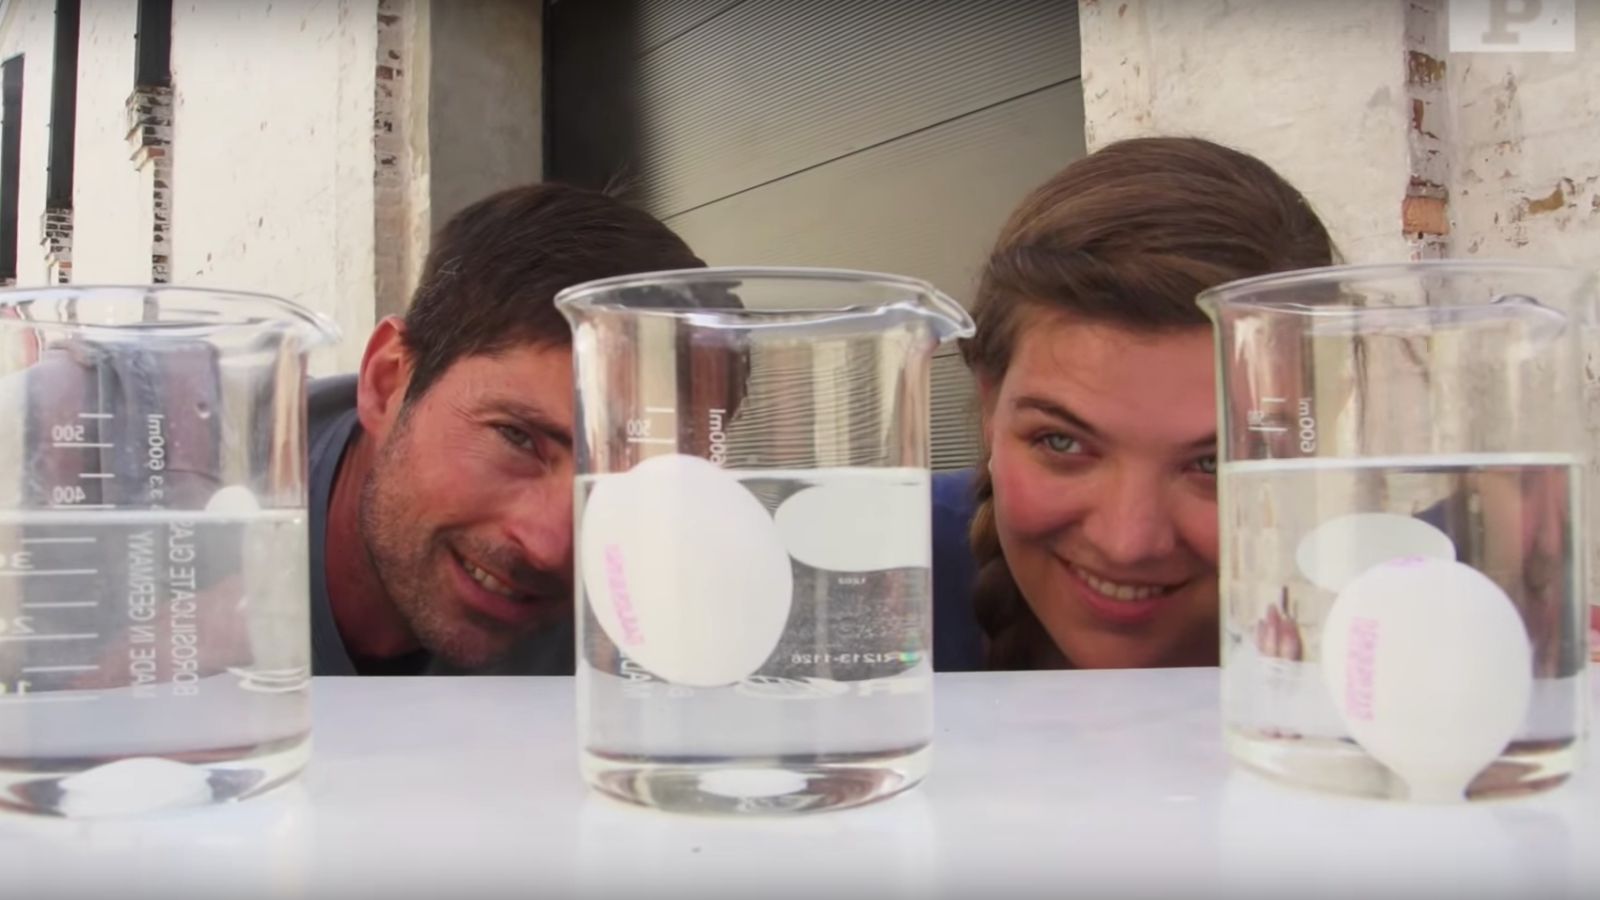 Flydende æg: I dette eksperiment skal du få et æg til at flyde på vandet.